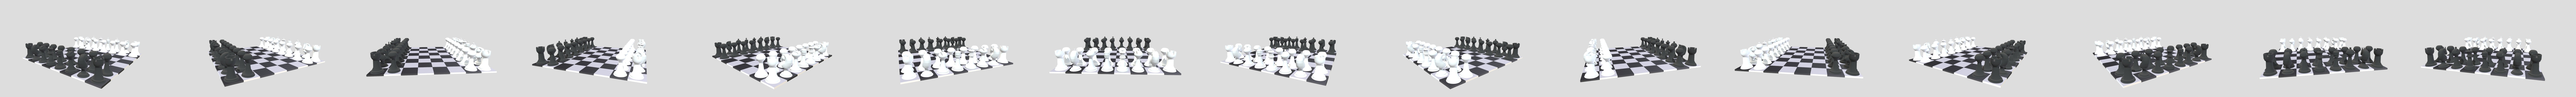 Tabuleiro de xadrez modelo 3D gratuito - .blend - Free3D